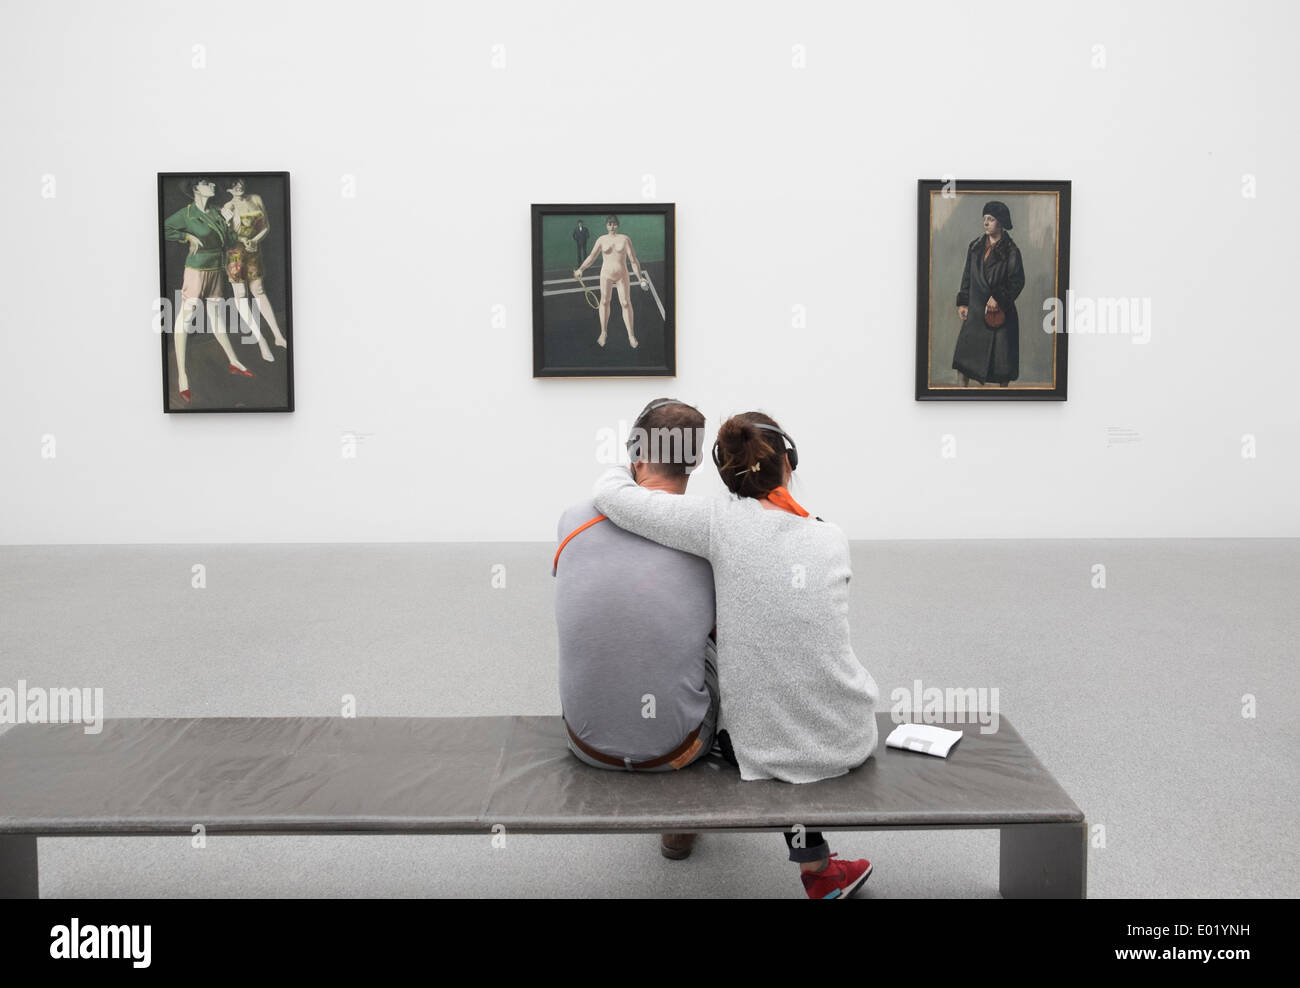 Deux tableaux au Musée Pinakothek à Munich Allemagne Banque D'Images